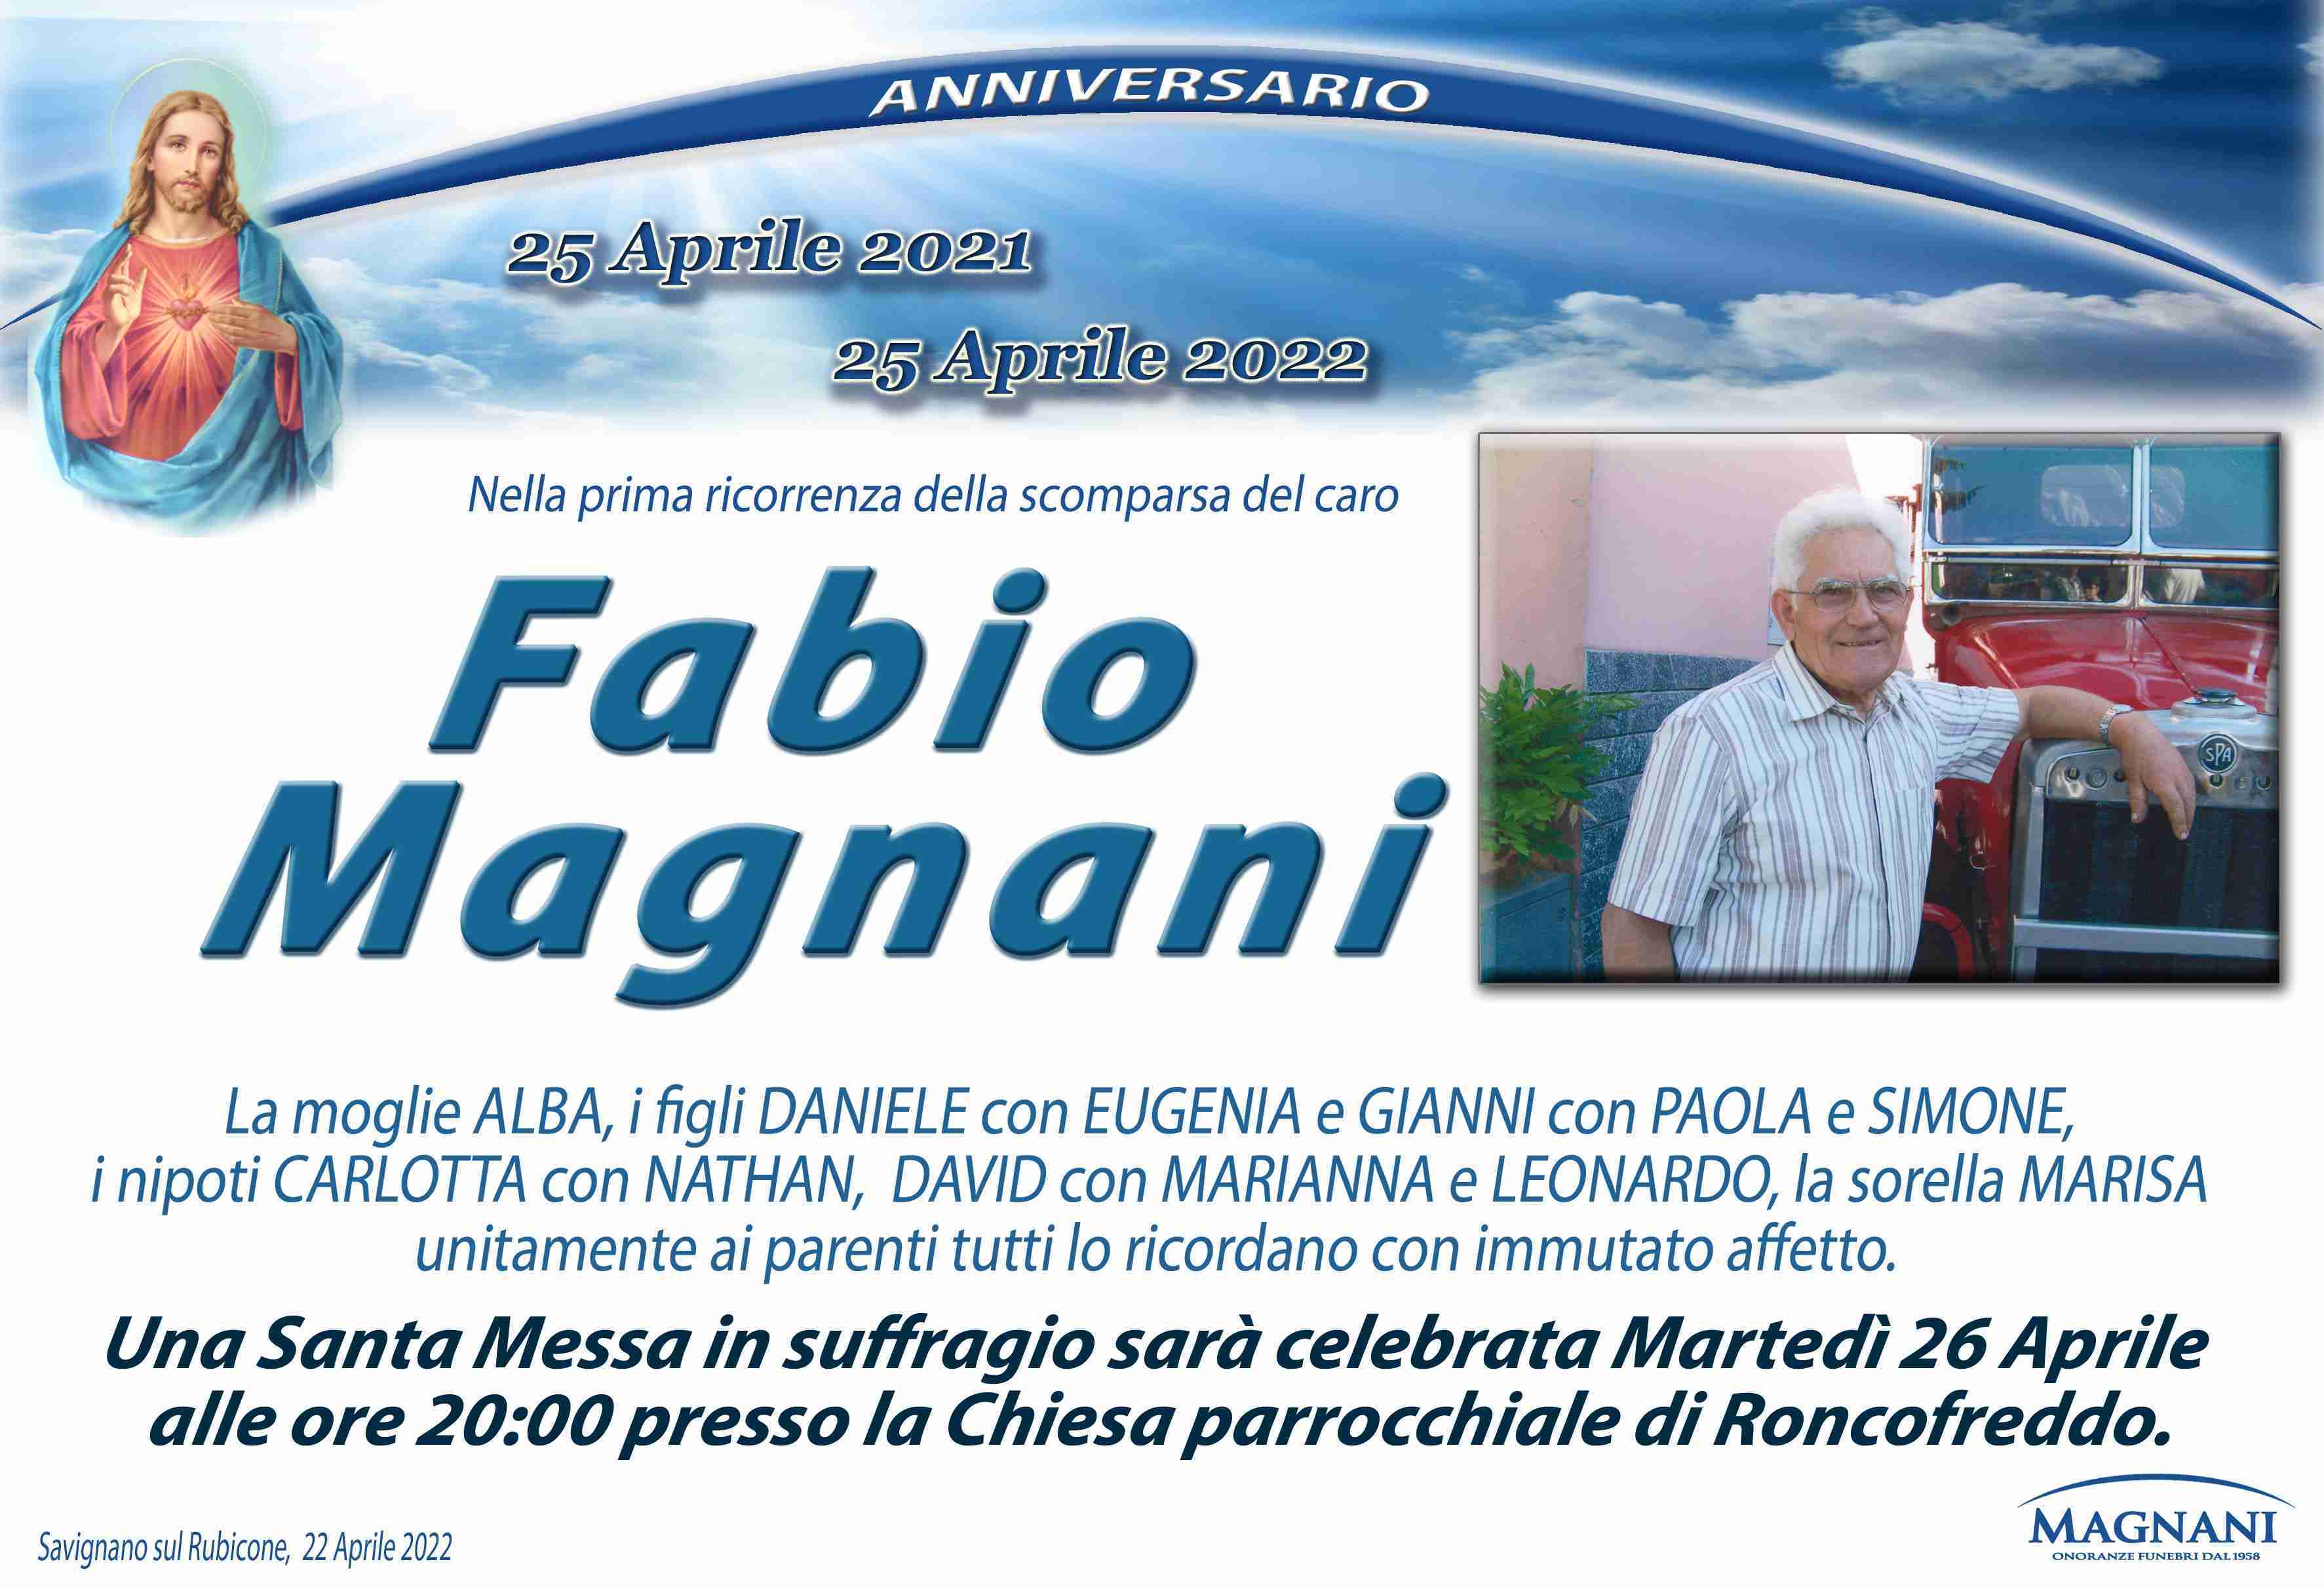 Fabio Magnani